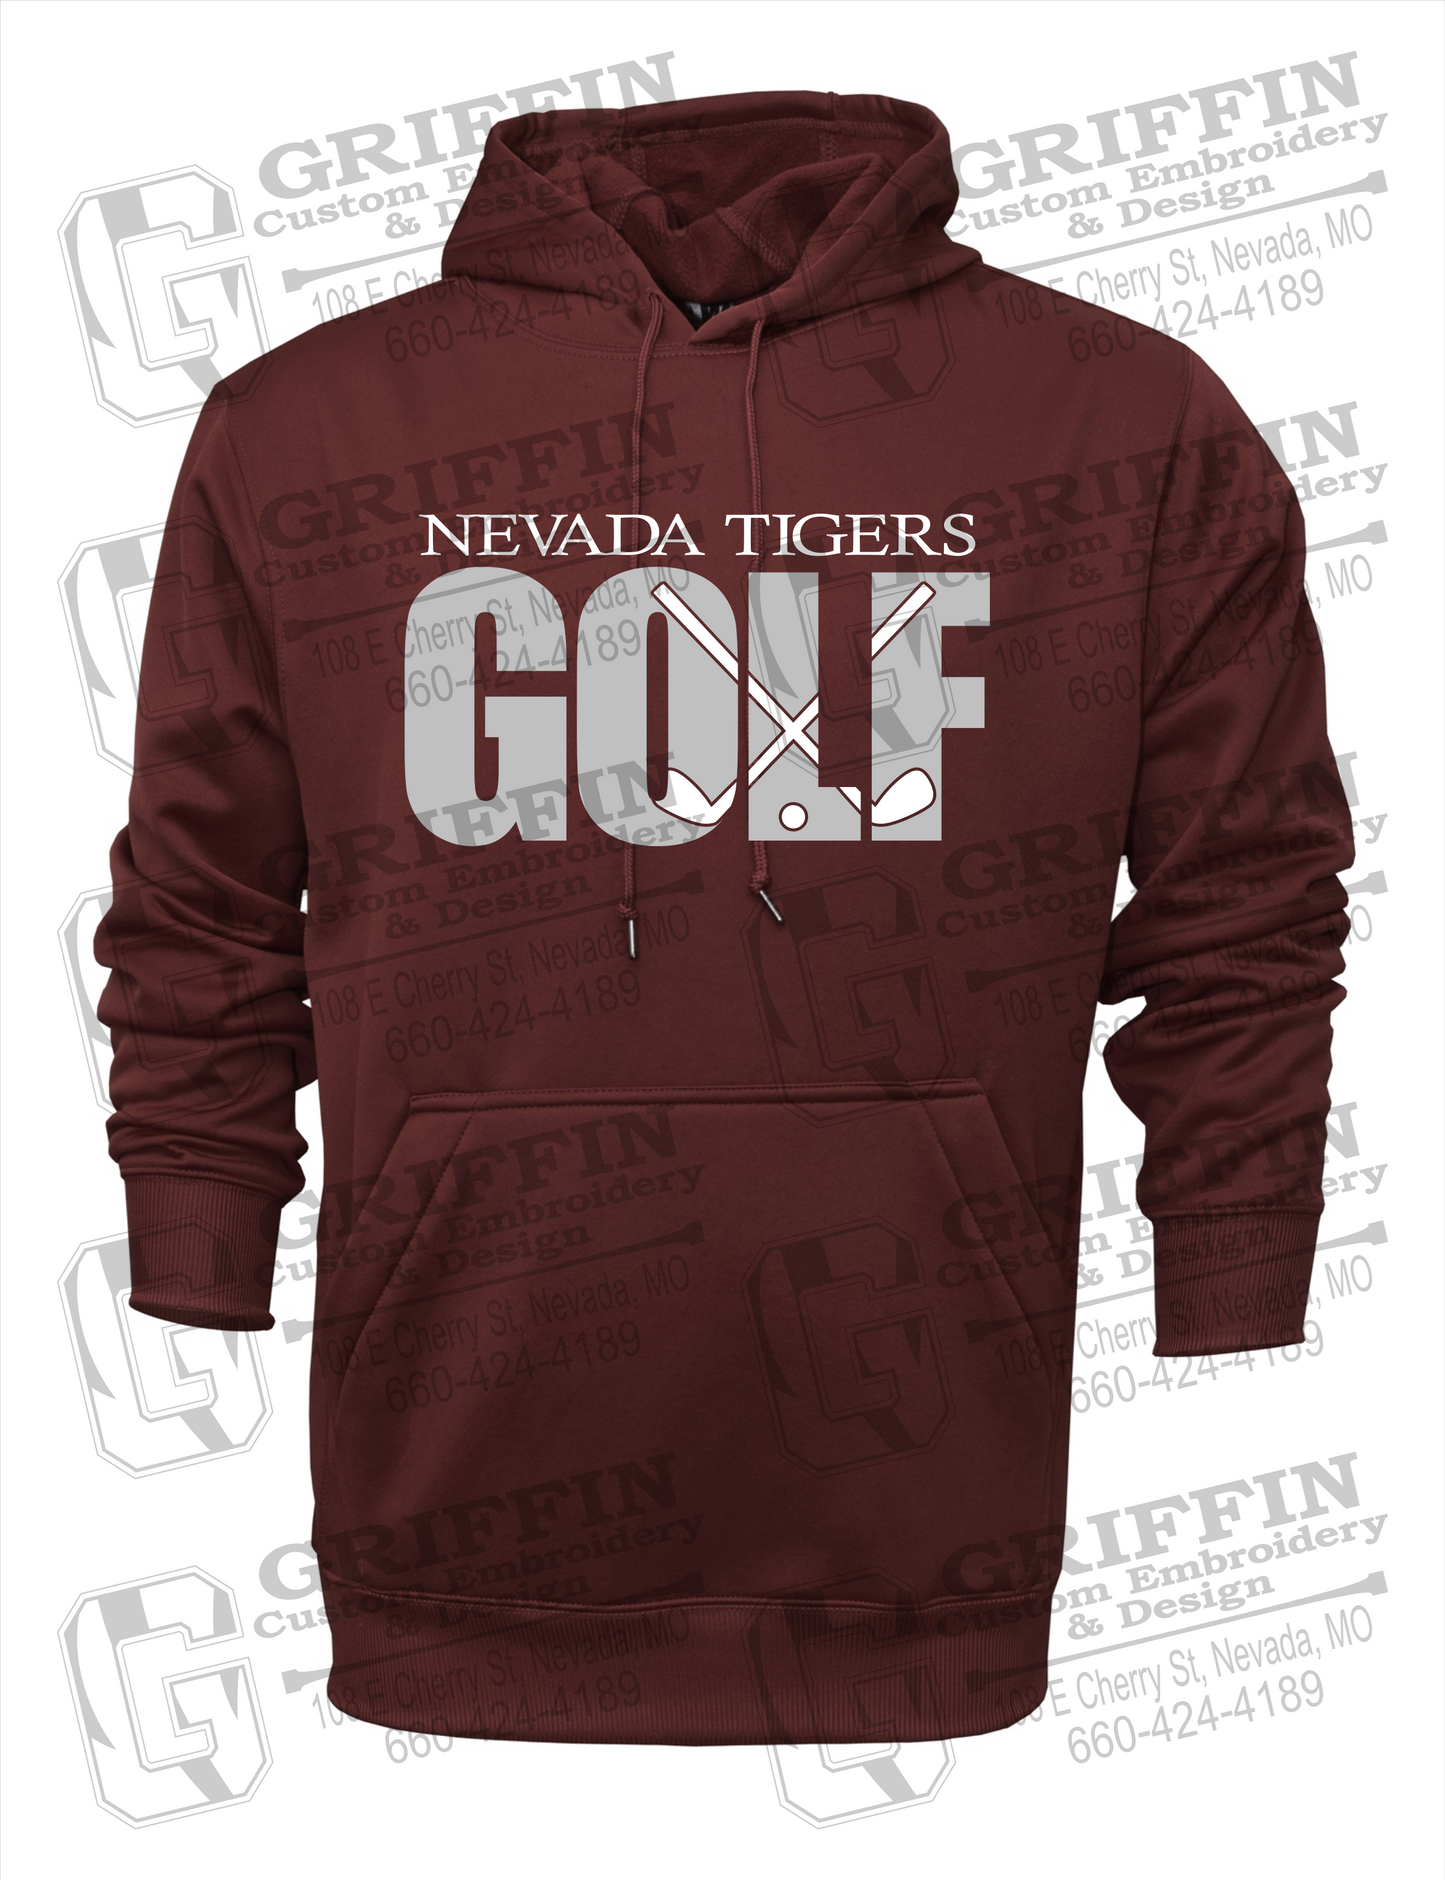 Nevada Tigers 23-Y Hoodie - Golf